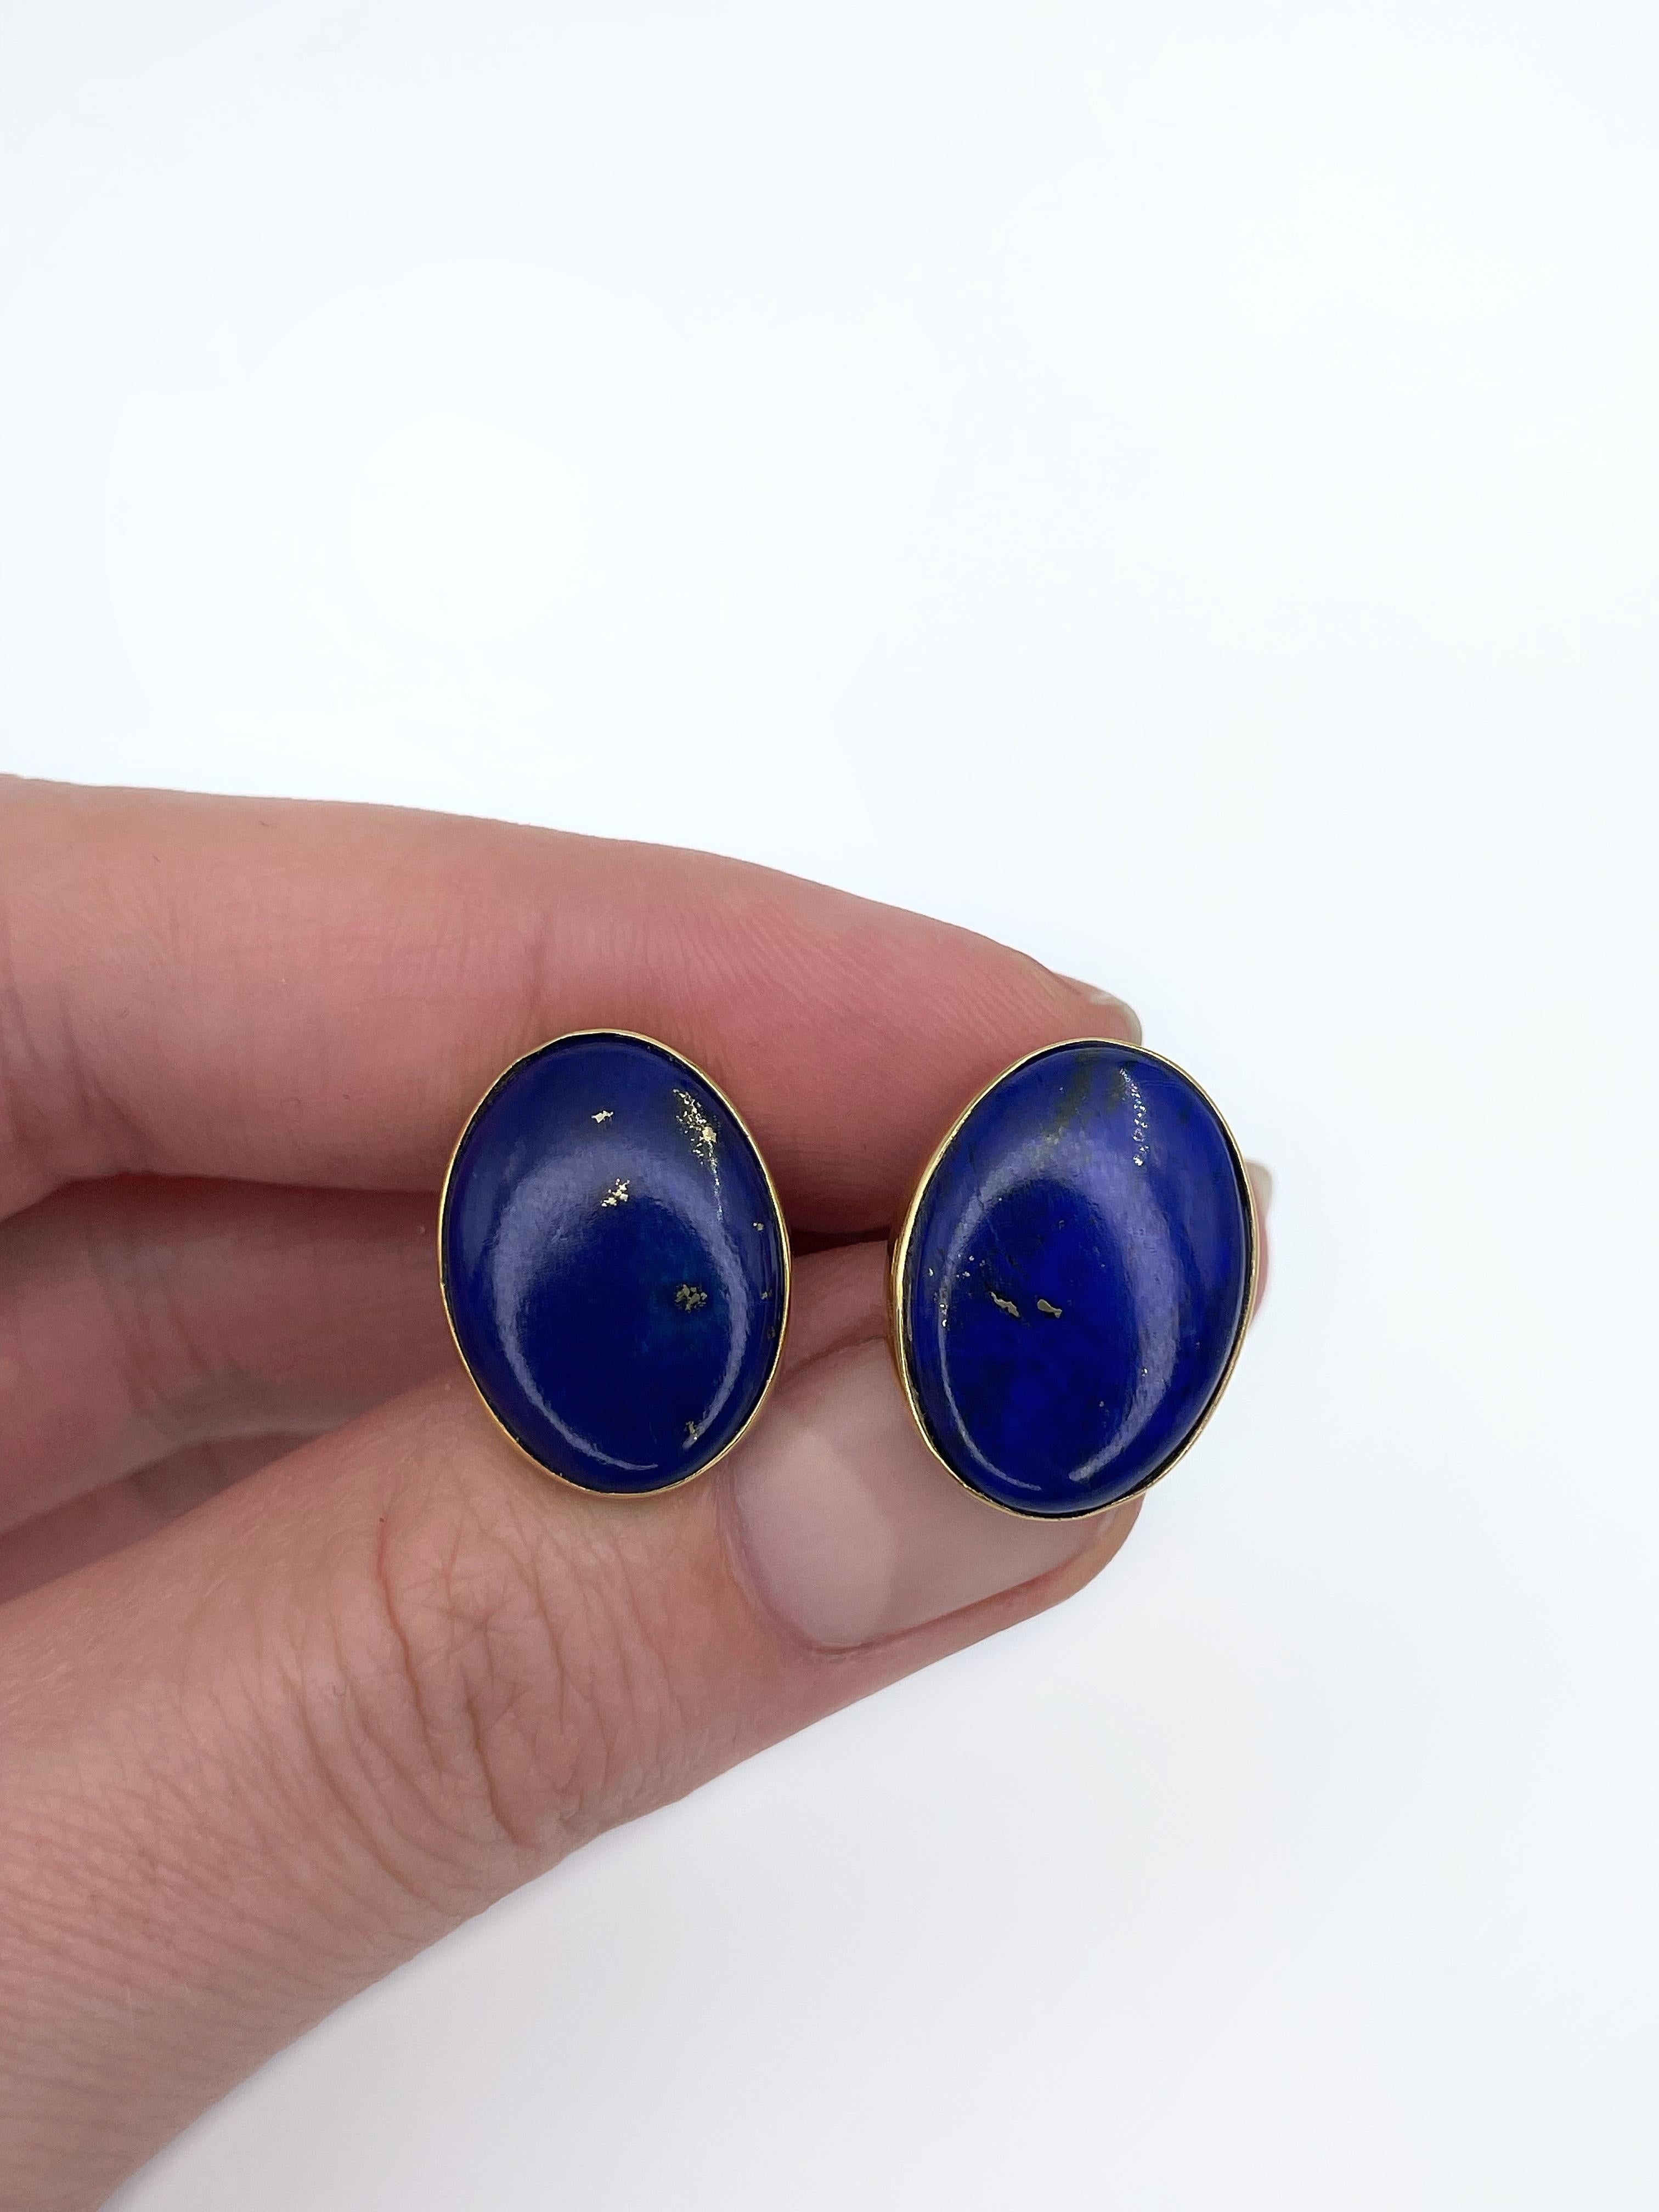 Vintage 18 Karat Gold 10.70 Carat Lapi Lazuli Oval Stud Earrings 1